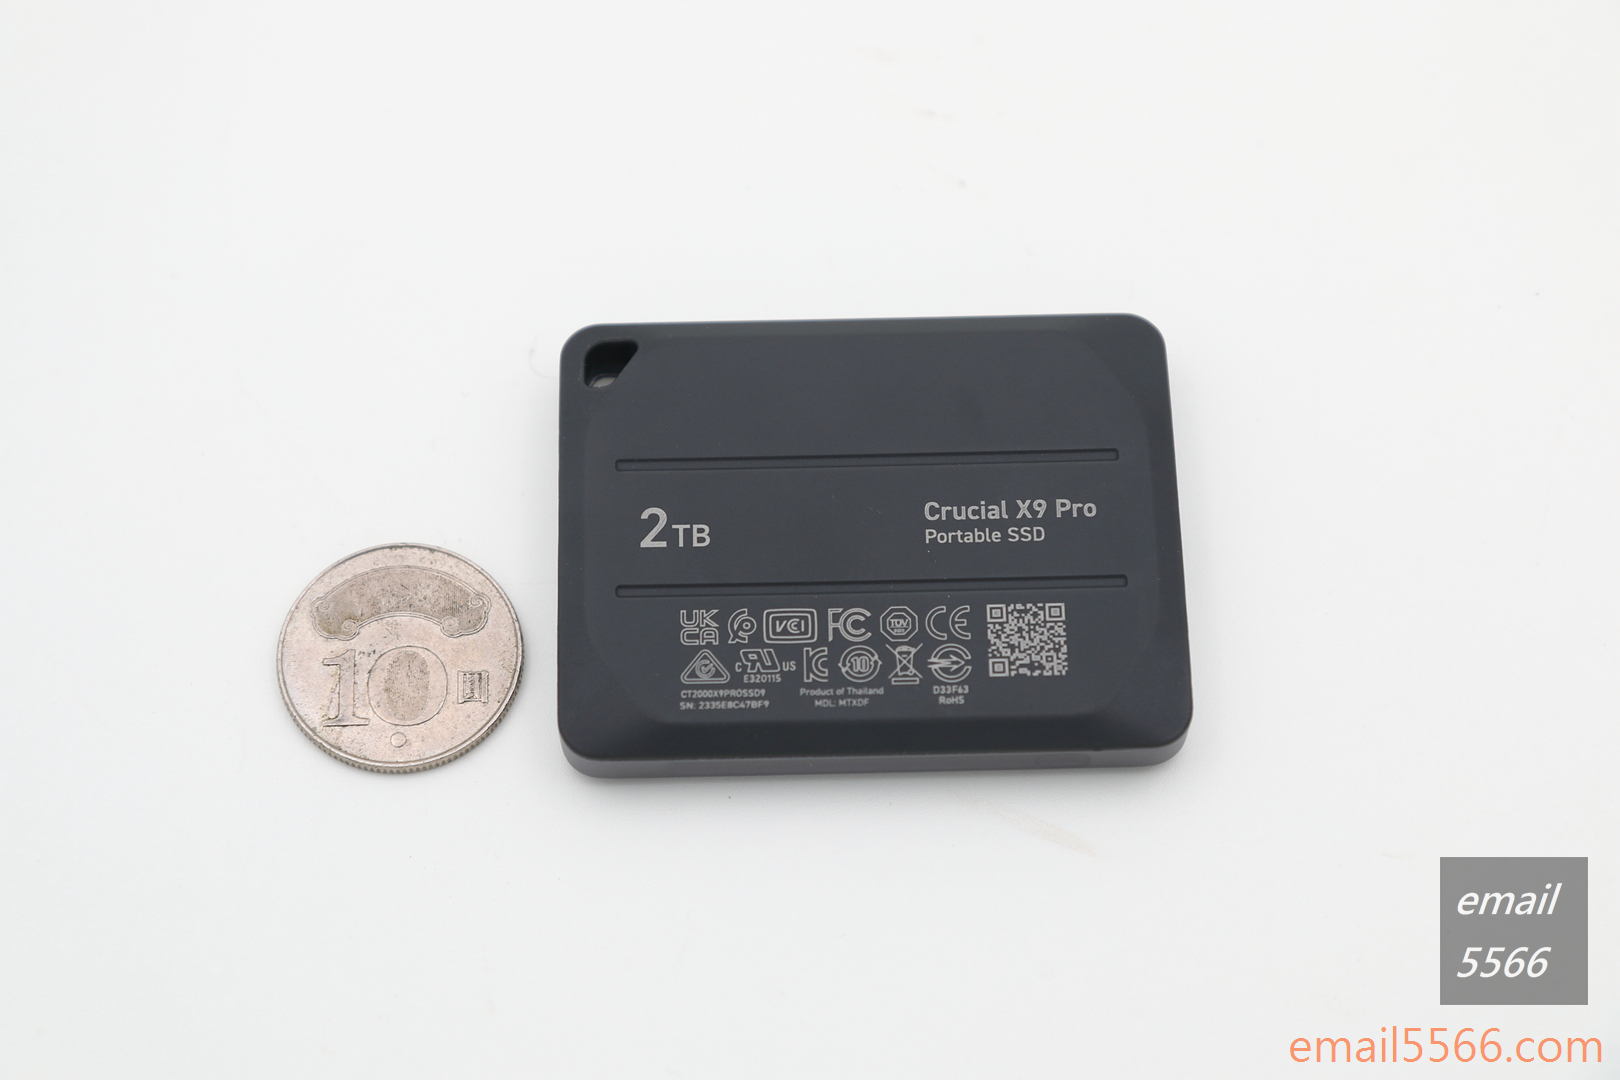 美光 Crucial X9 Pro 行動SSD硬碟 2TB 開箱-背面則是搭配柔軟觸感具備彈性橡膠底座